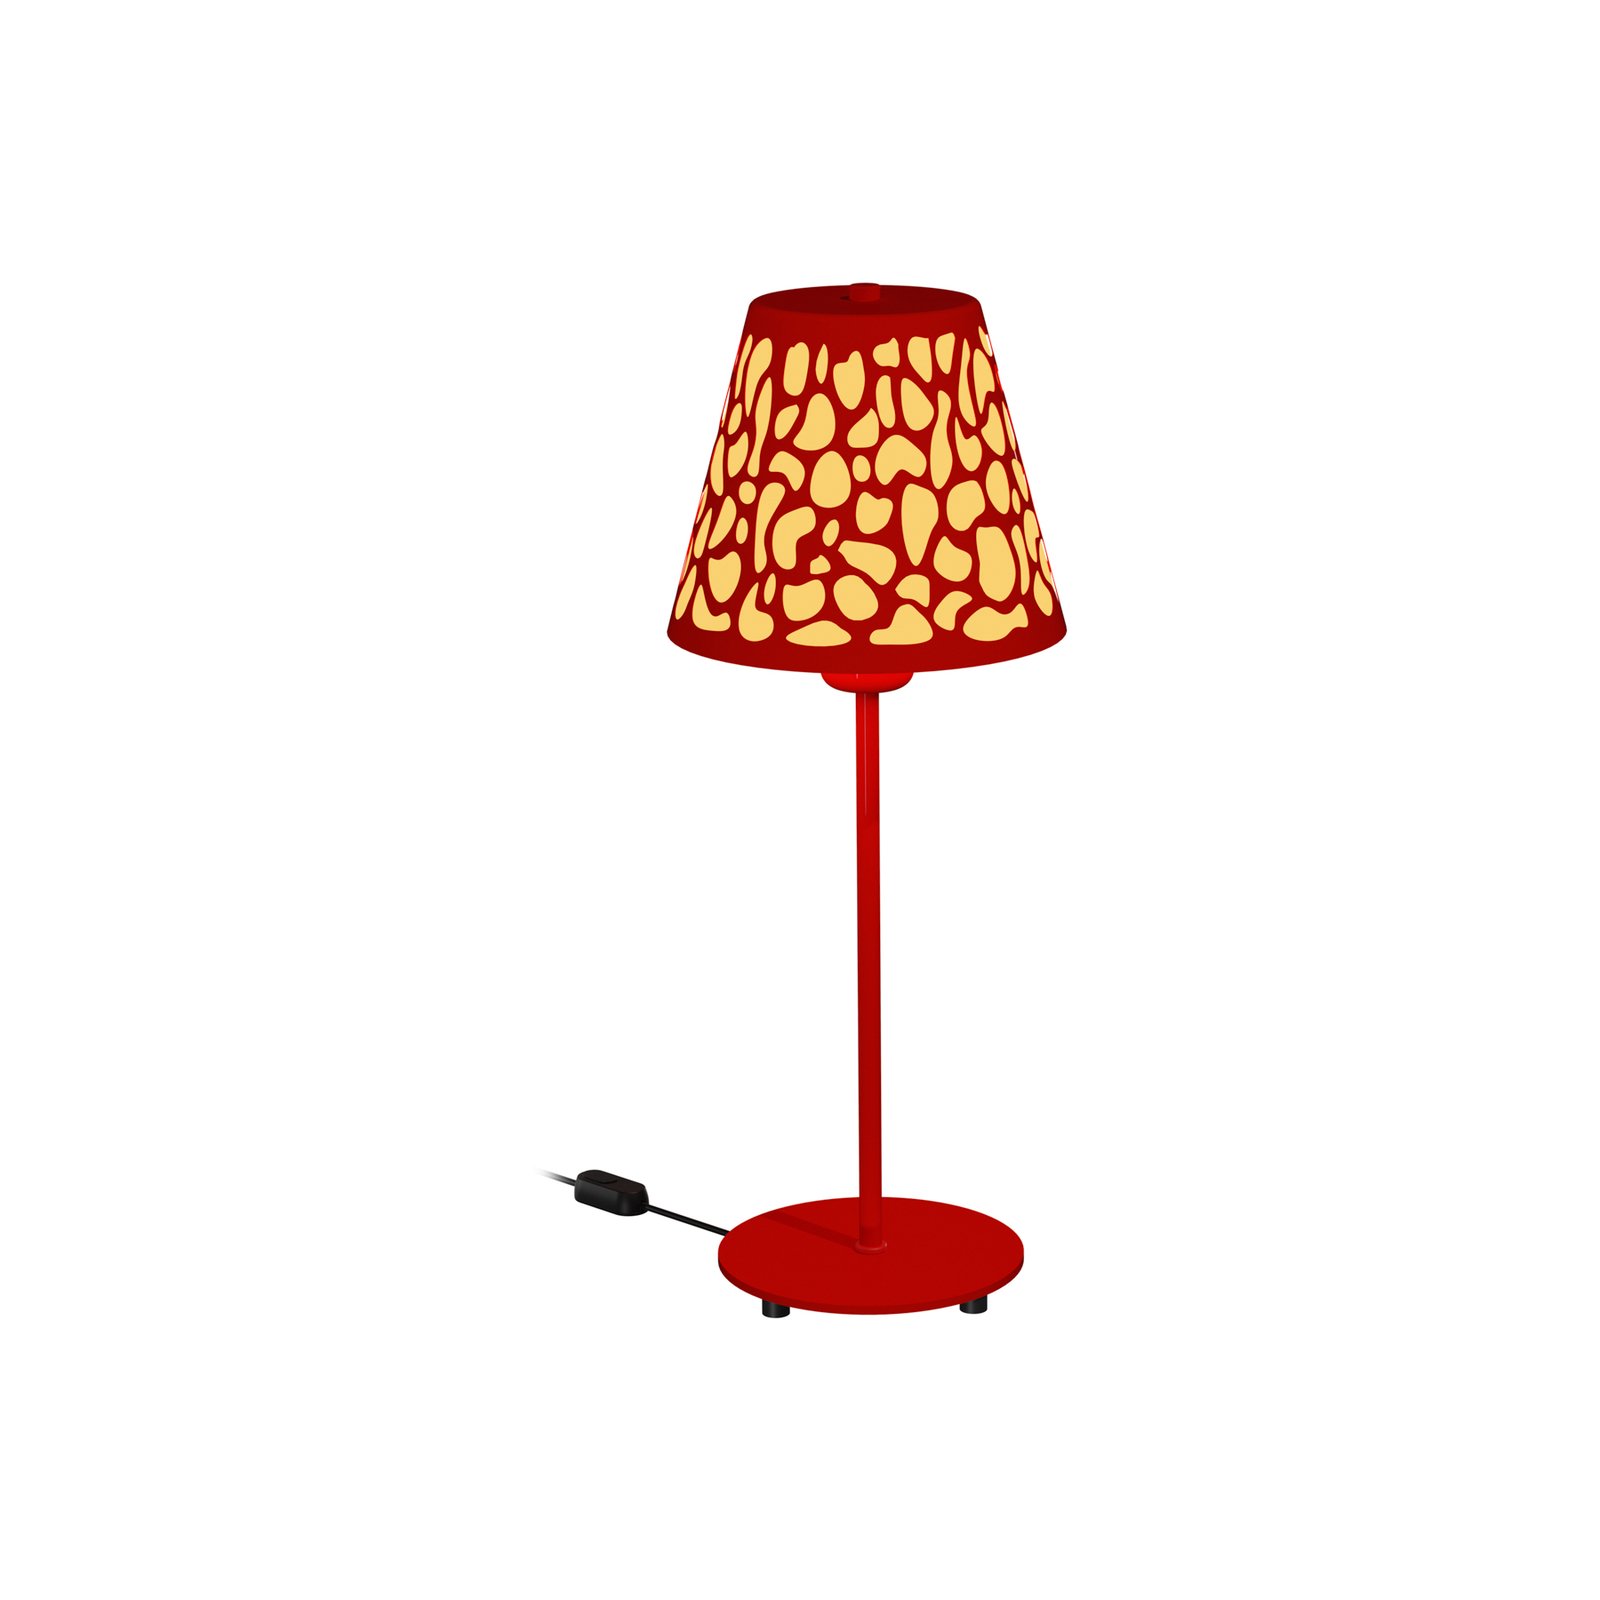 Aluminor Nihoa floor lamp, perforated, red/yellow